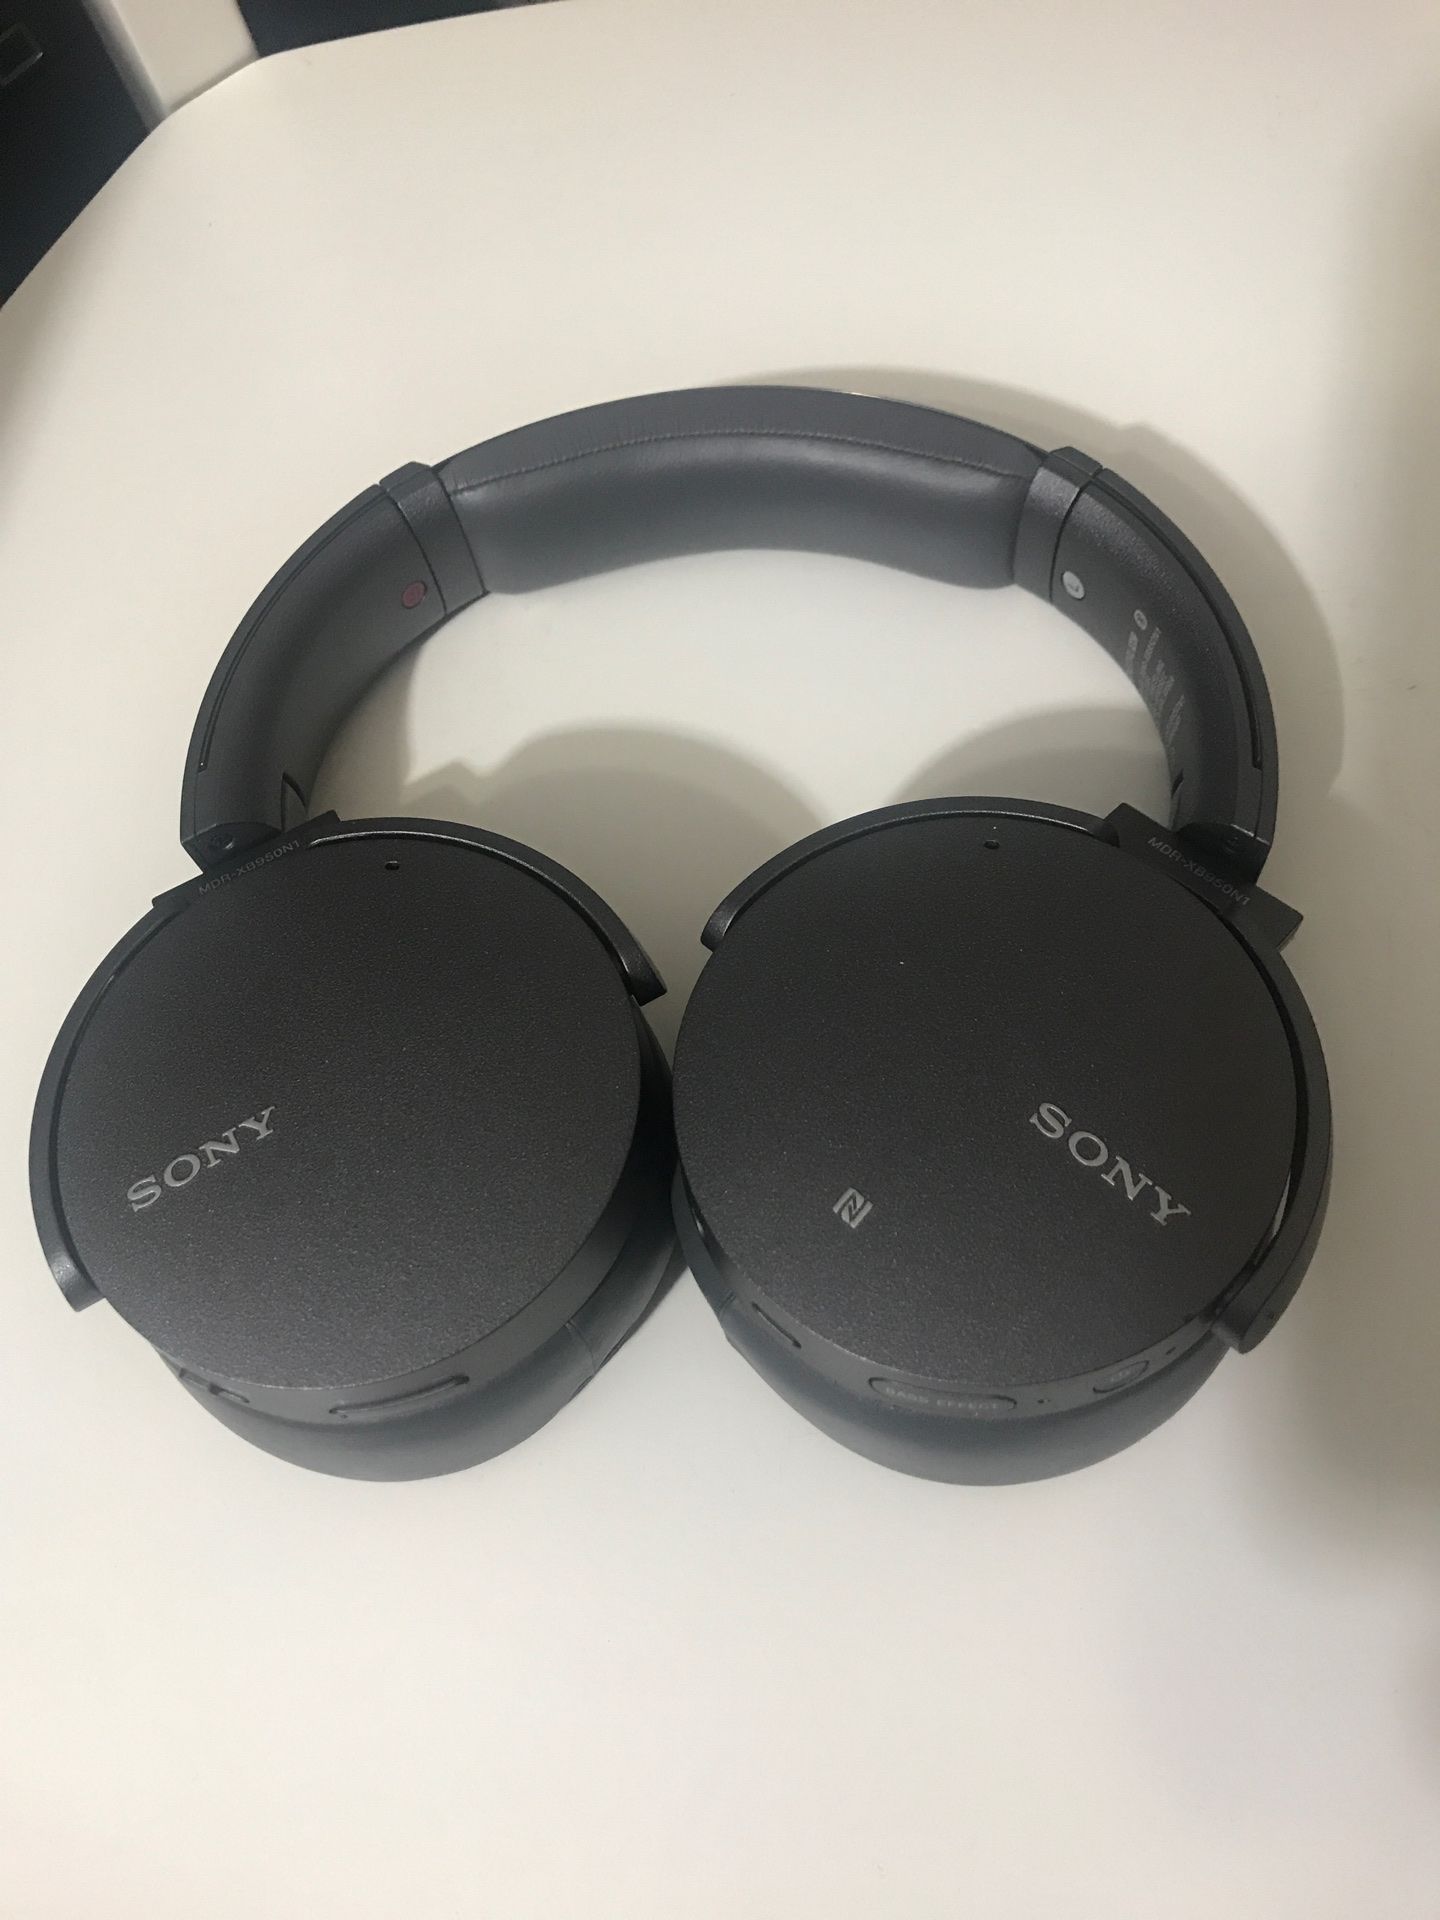 Sony wireless headphones Great Condition!